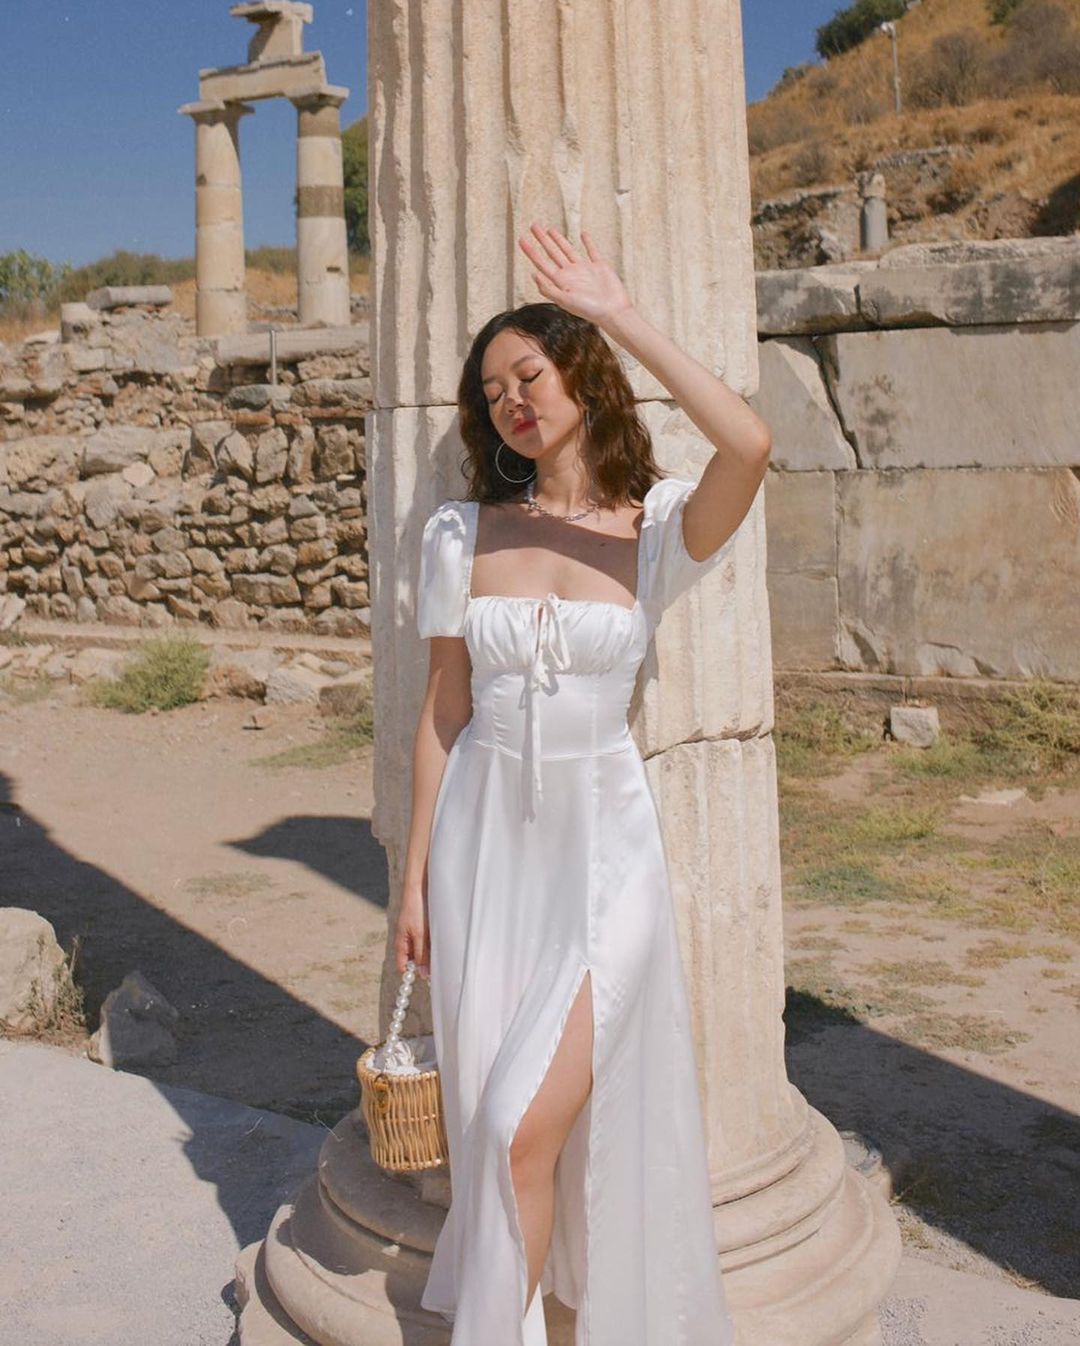 一位身穿來自 the.lookbook.select 的復古風格 Adella 連身裙的女士站在古老的柱子旁，舉起手來遮擋陽光，手裡拿著一個小編織籃子。